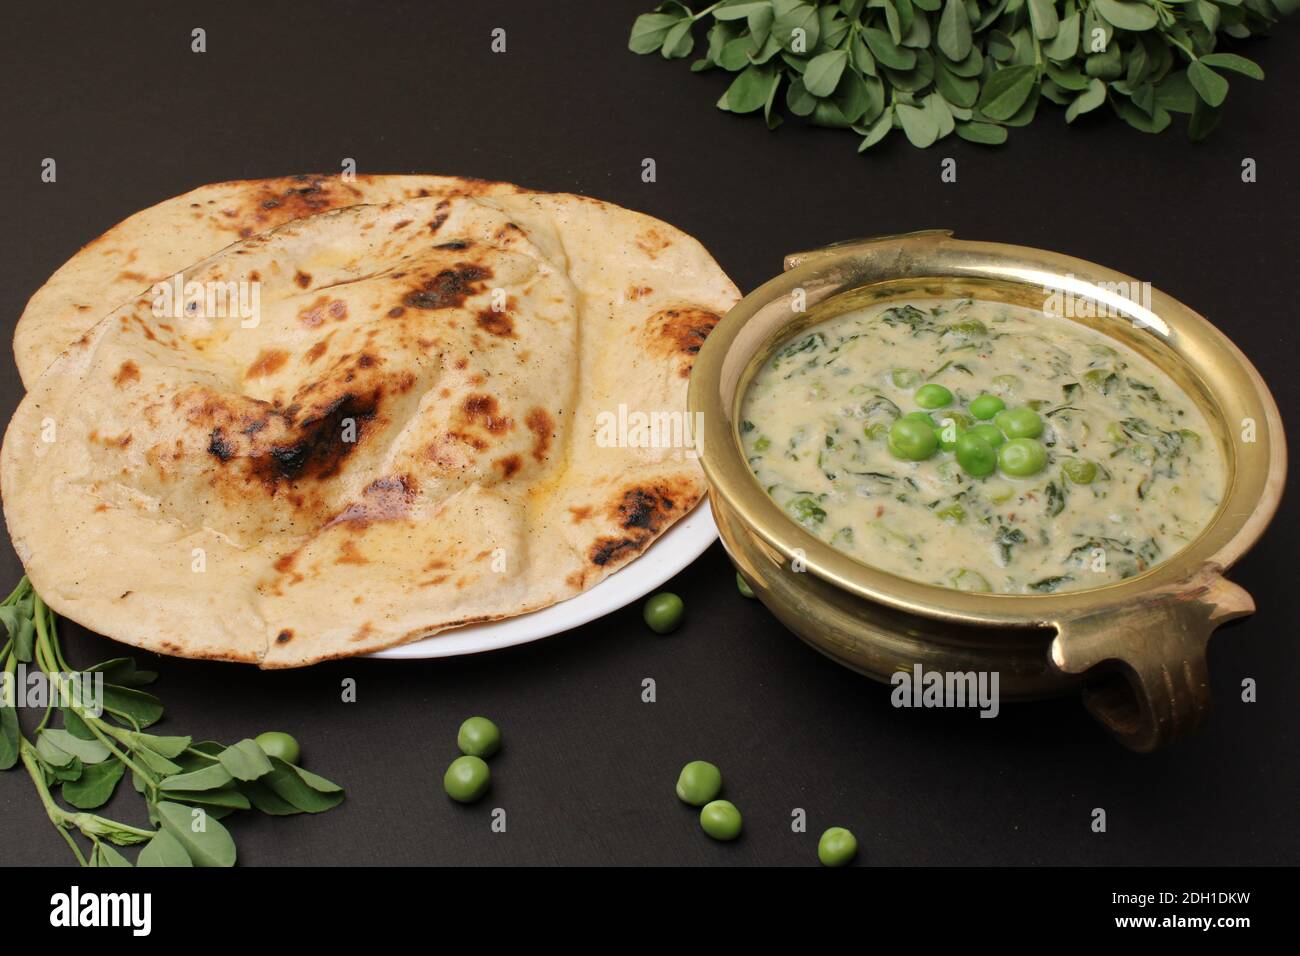 Methi Mutter Malai, Indian food server with naan or tandoori roti. Stock Photo